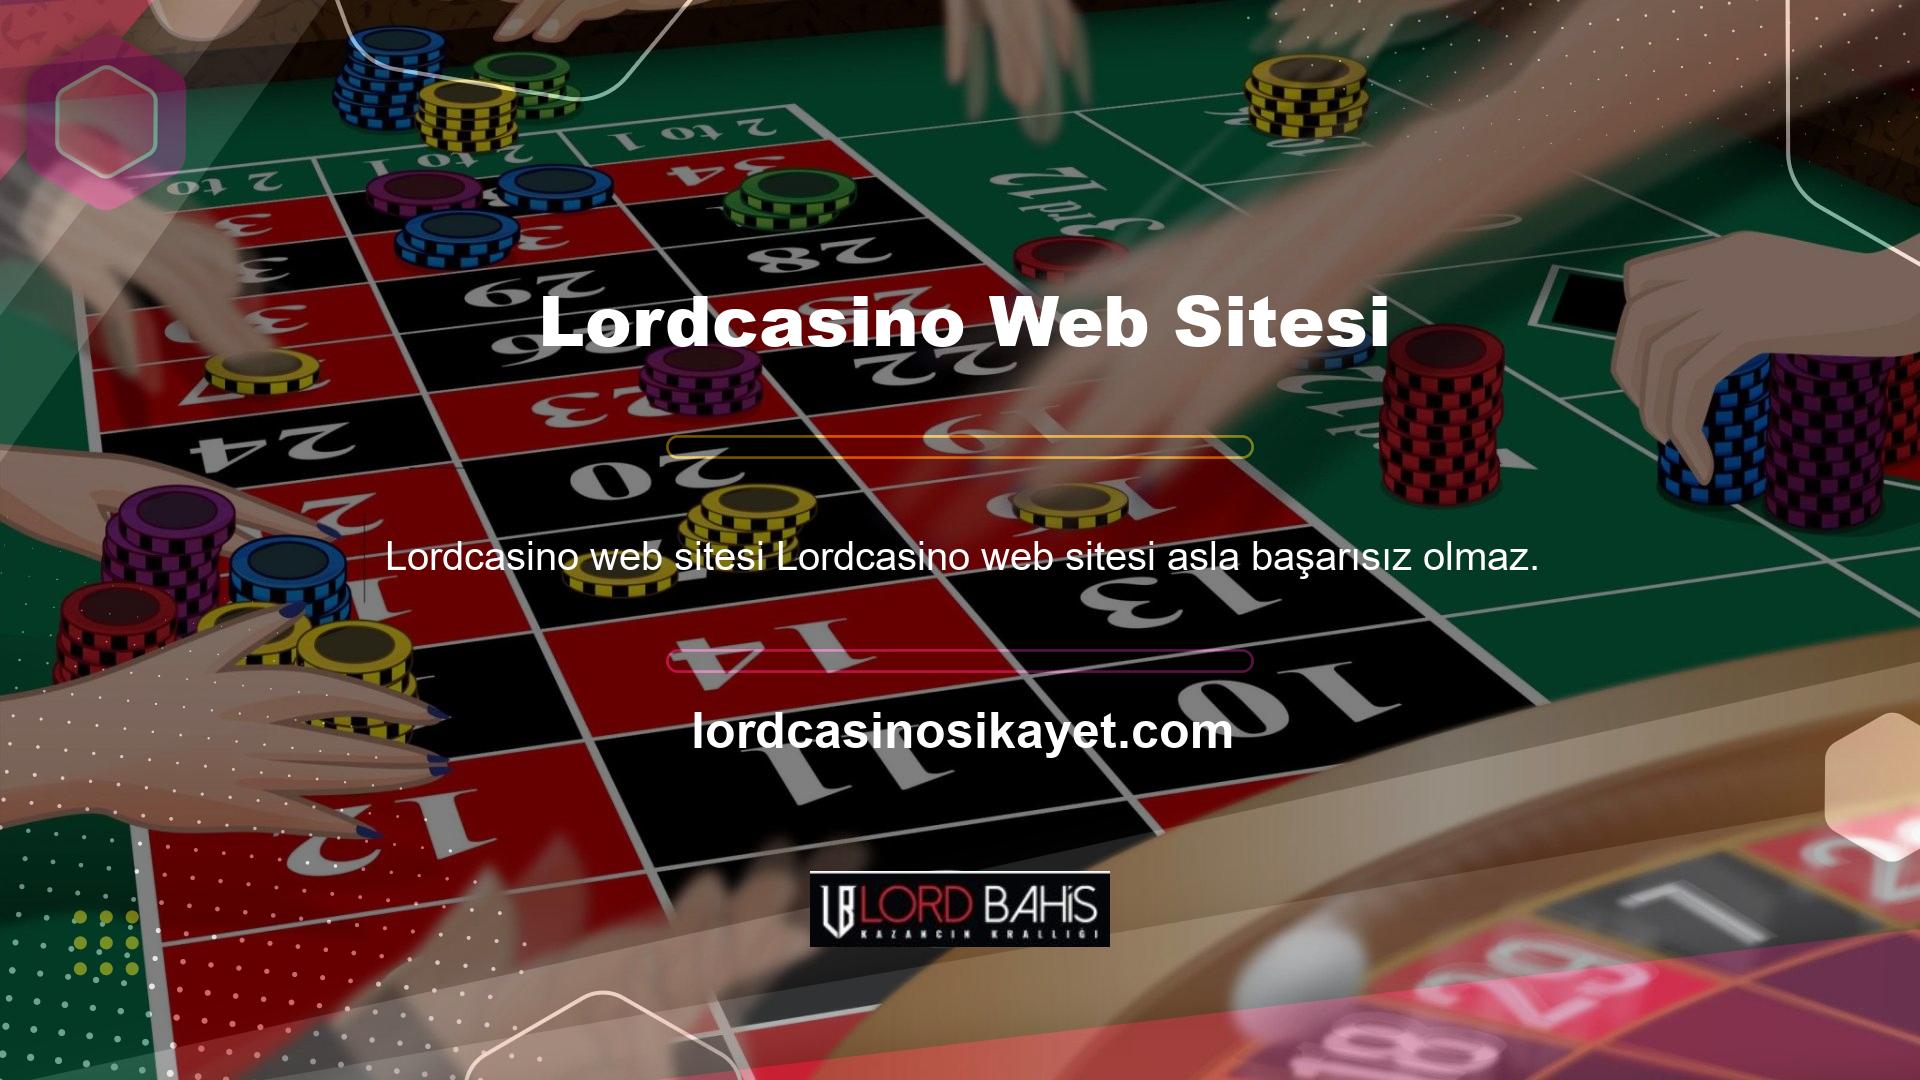 Web sitesi yapısı ve hizmetleri basit, kullanıcı odaklı bir dille yazılmıştır